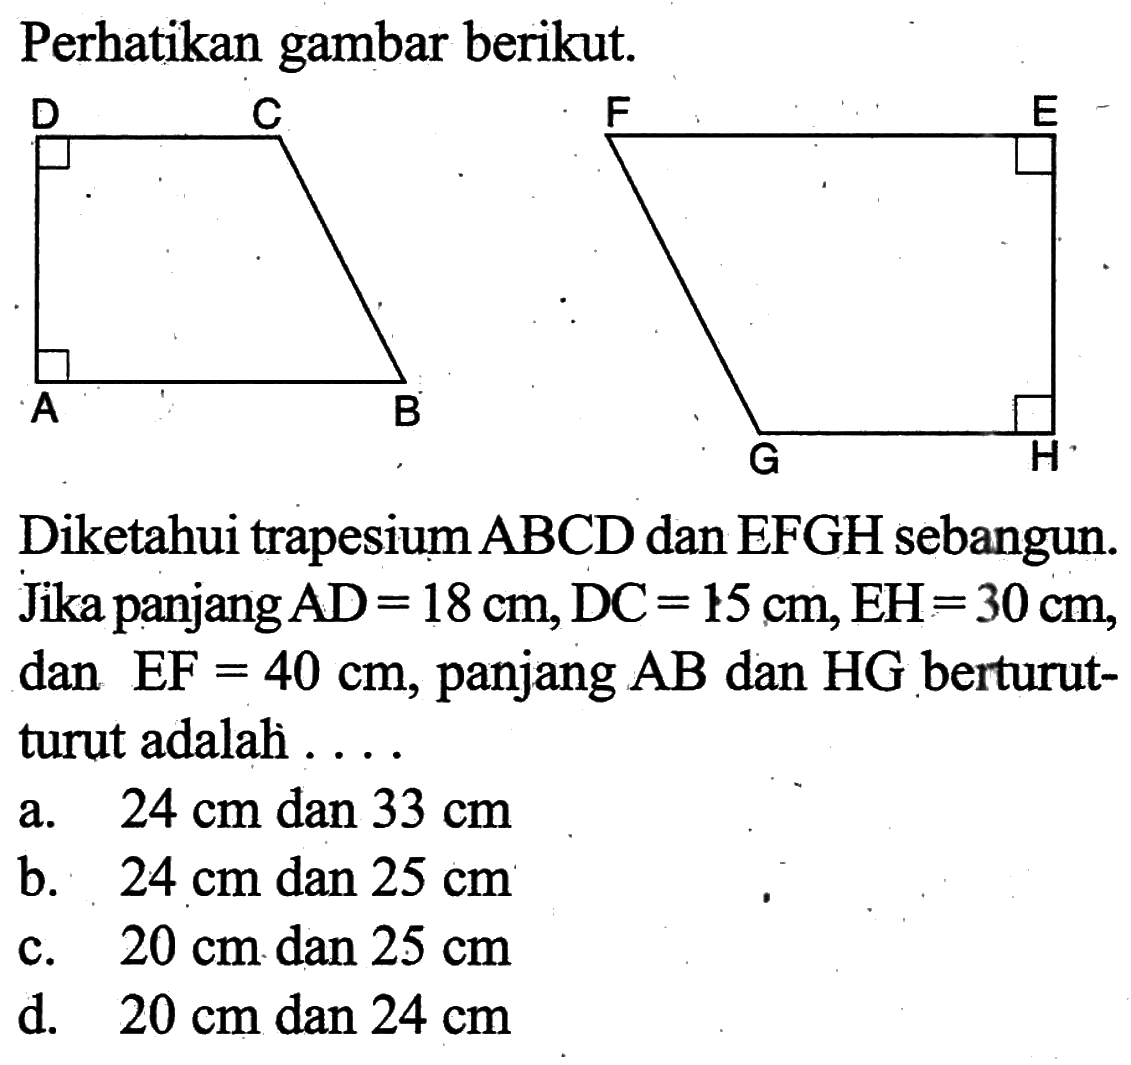 Perhatikan gambar berikut.Diketahui trapesium  ABCD  dan  EFGH  sebangun. Jika panjang  AD=18 cm, DC=15 cm, EH=30 cm , dan  EF=40 cm , panjang  AB  dan  HG  berturut-turut adalah ....